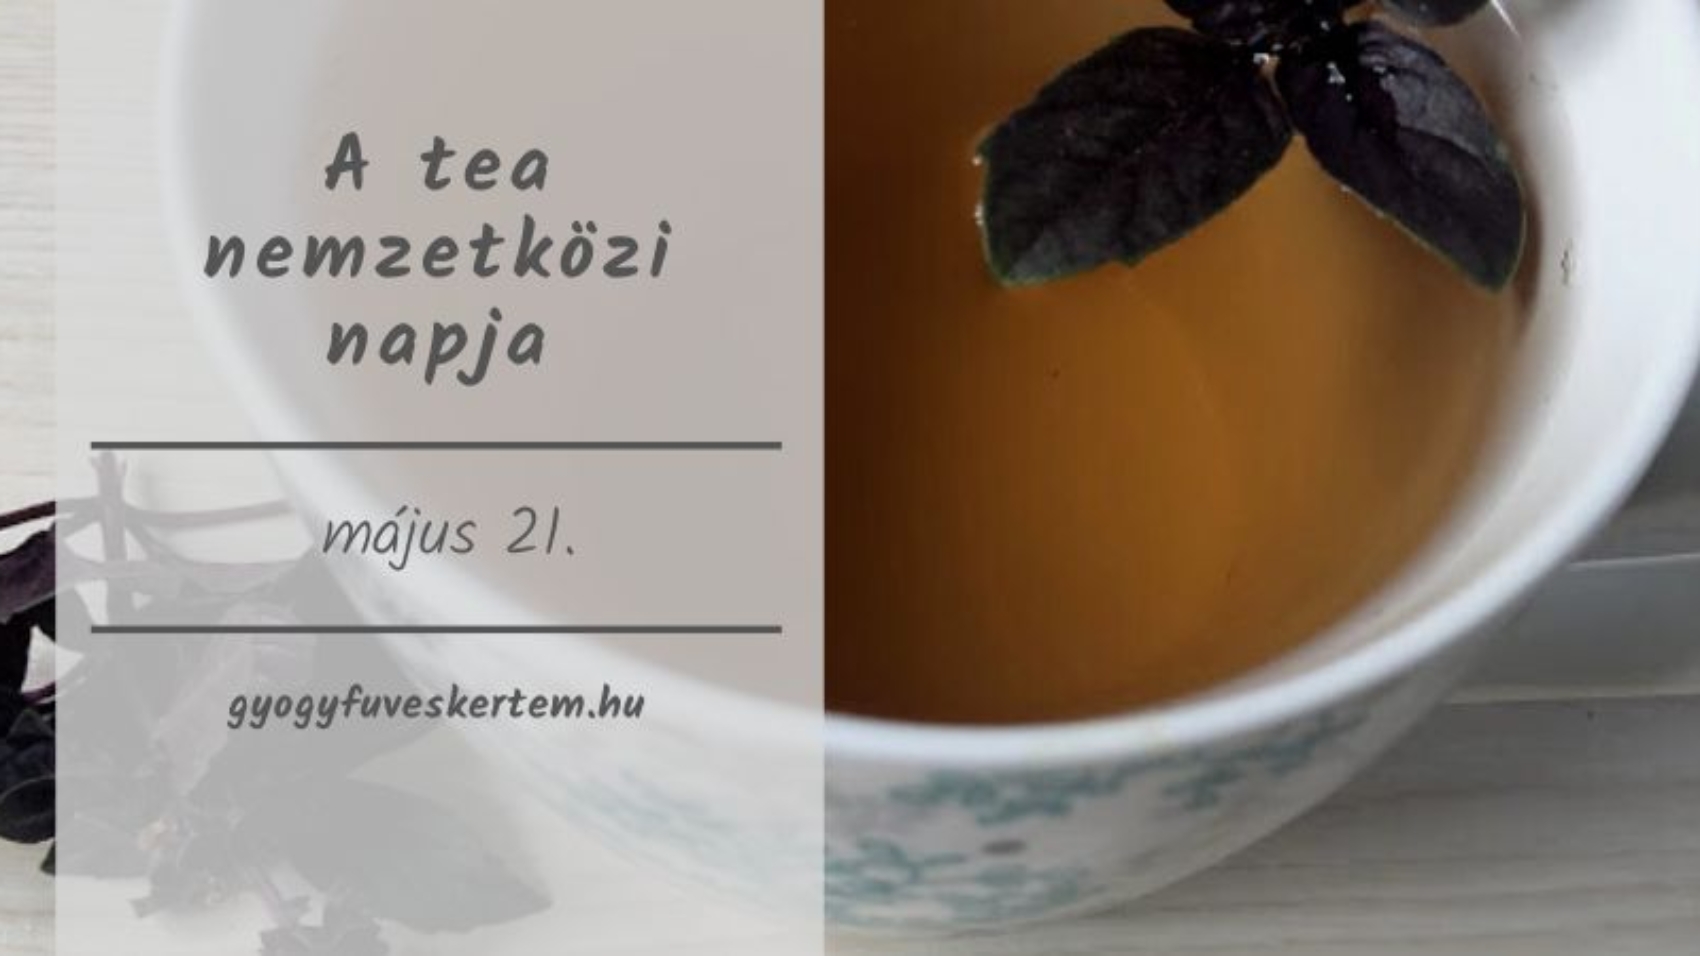 Mostantól a tea nemzetközi napját is ünnepli a világ